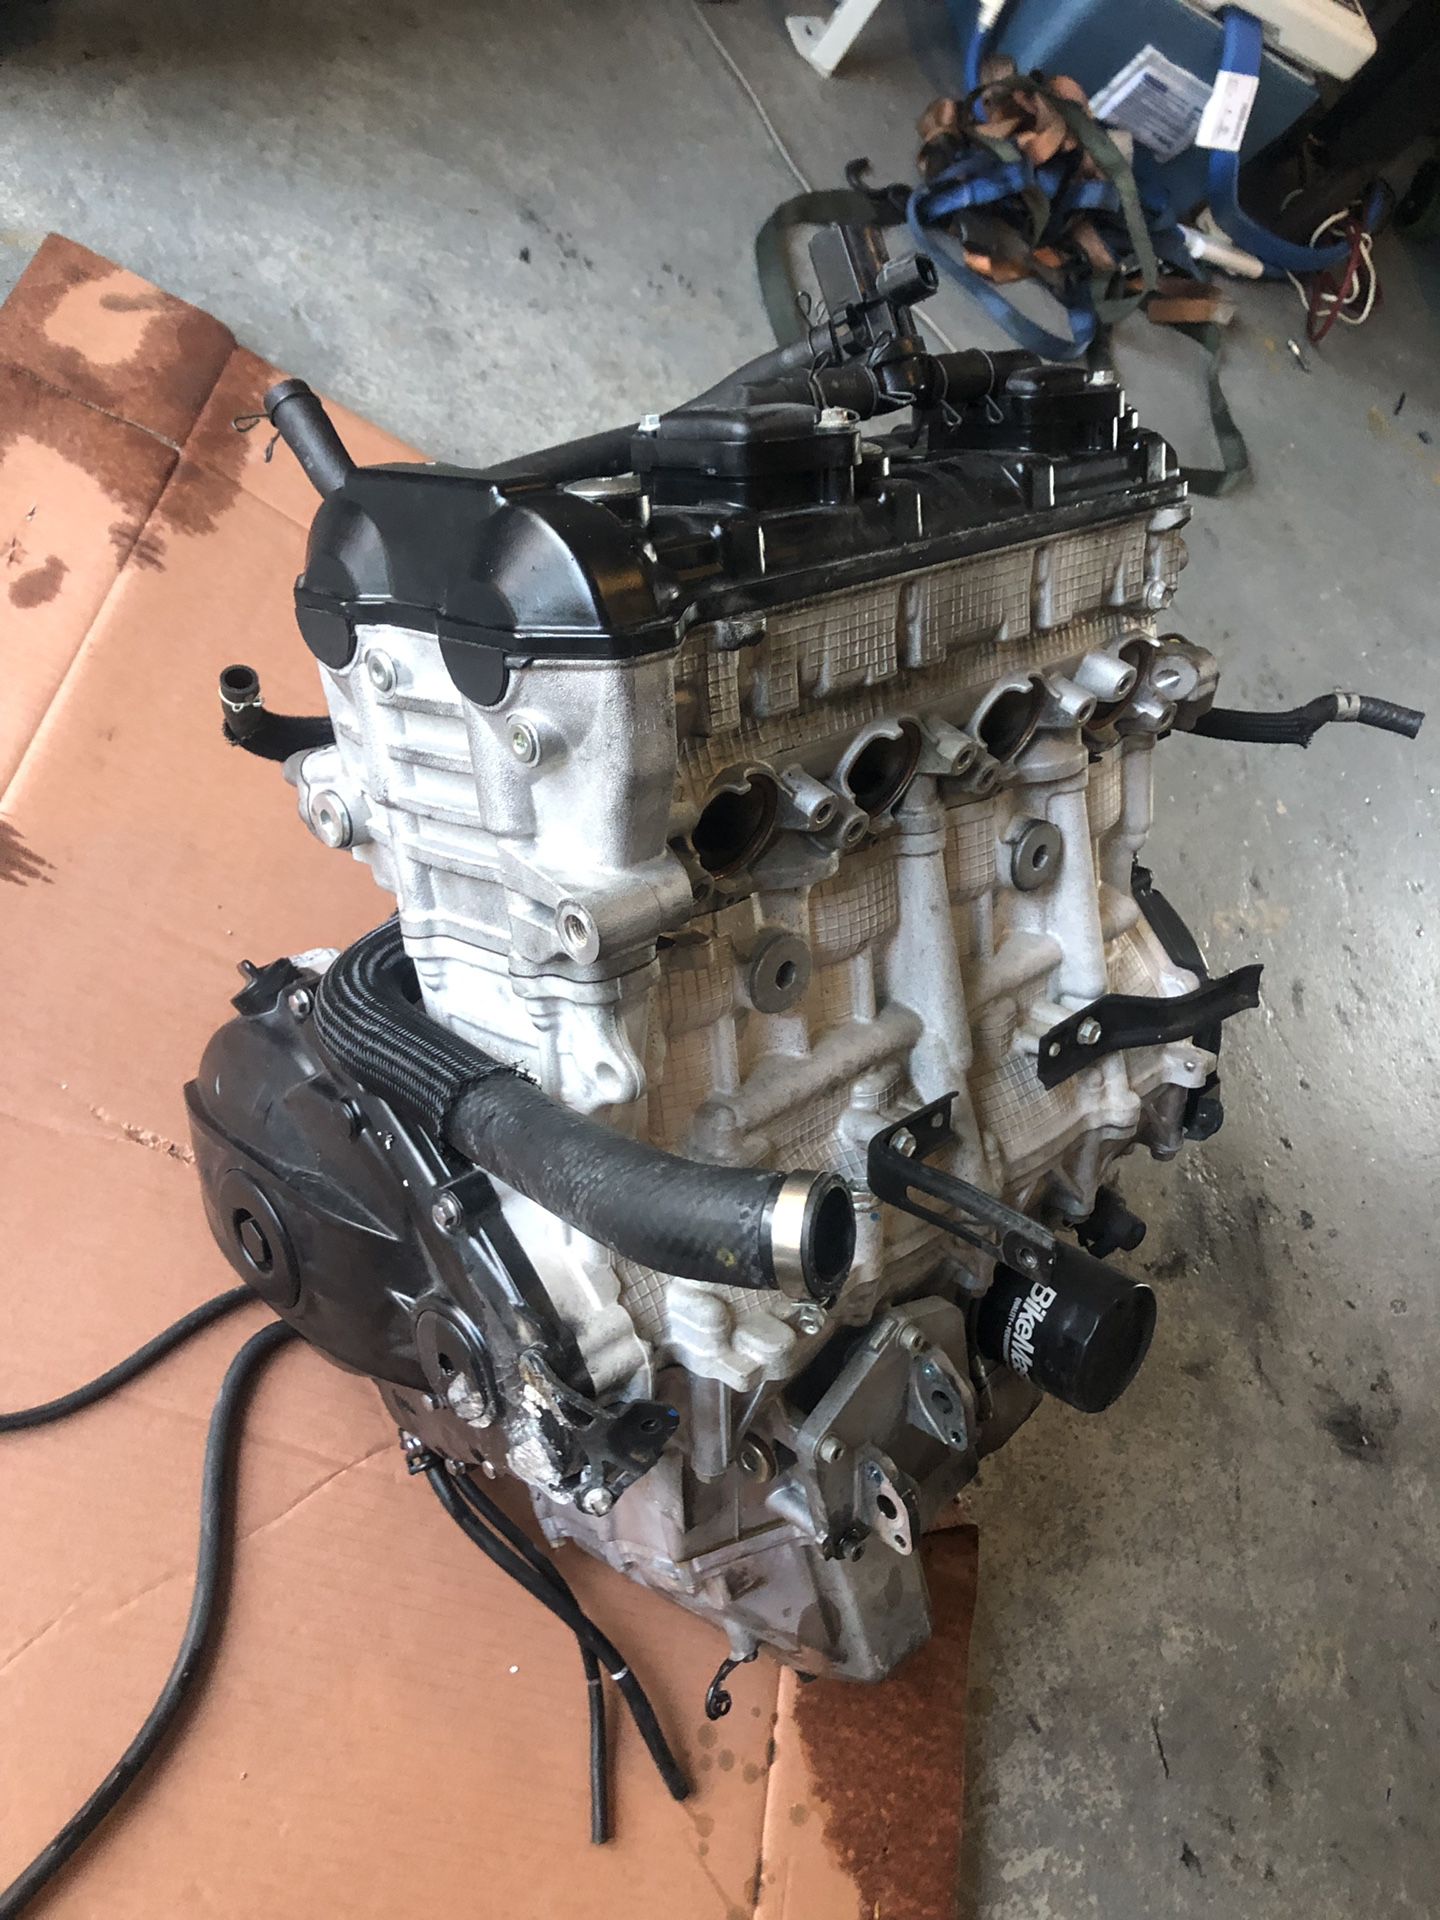 2017/2018 Gsxr 1000 engine